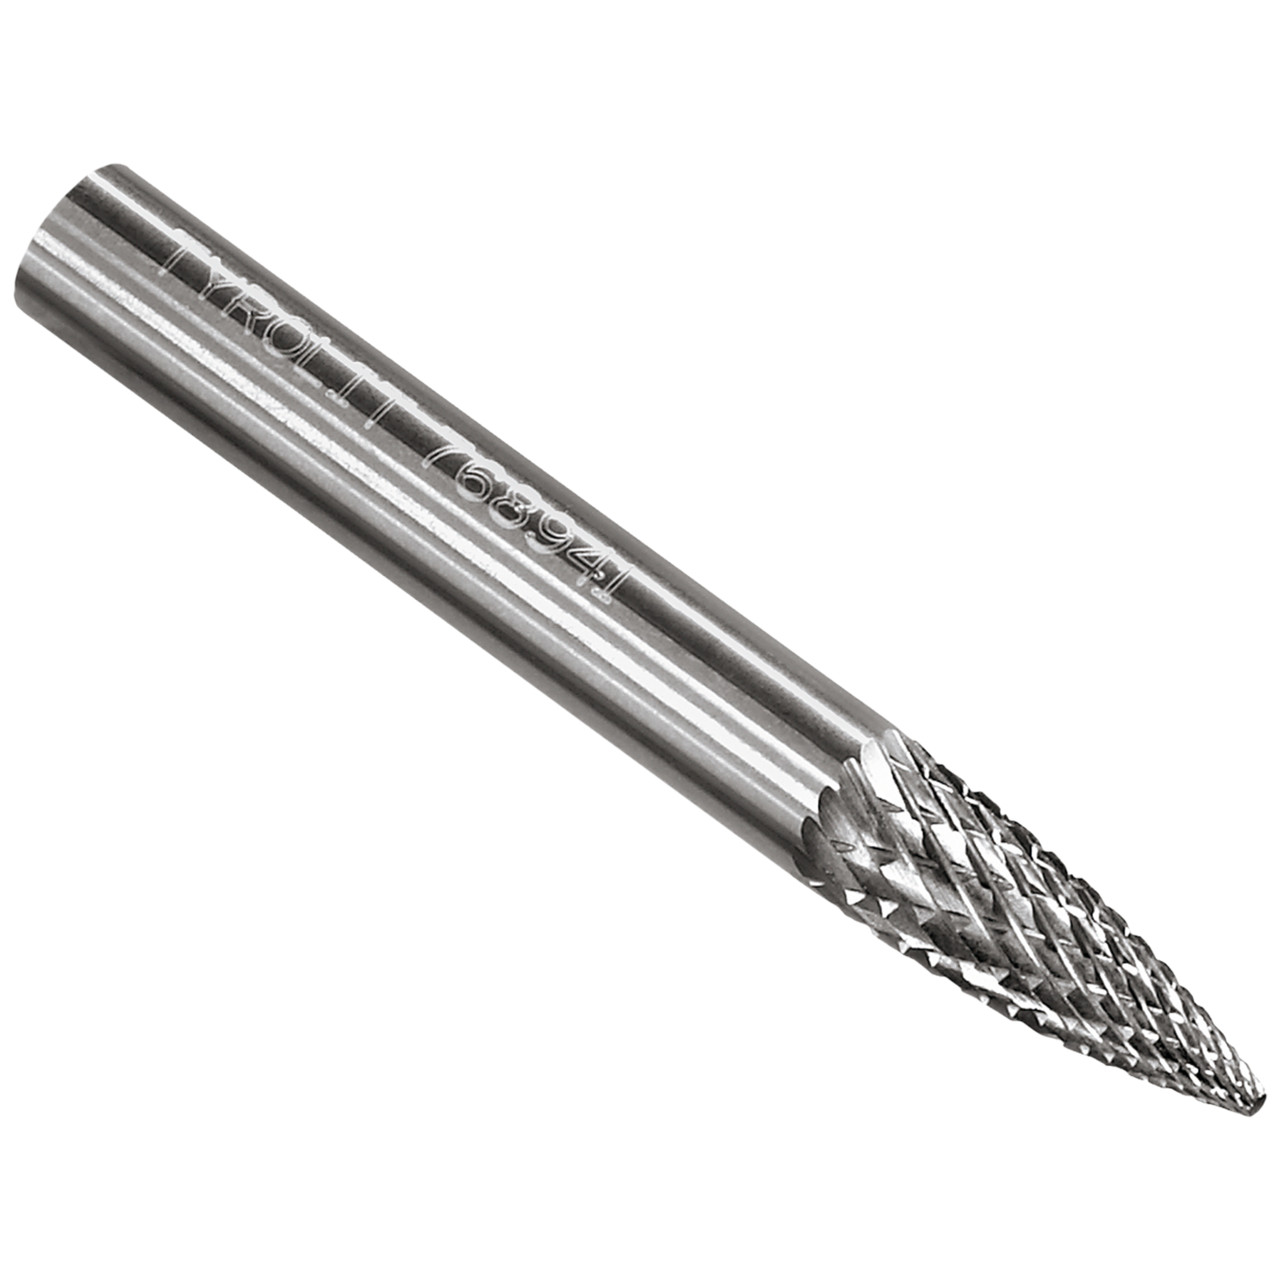 TYROLIT hardmetalen frees DxT-SxL 12x25-6x70 Voor gietijzer, staal en roestvrij staal, vorm: 52SPG - projectiel, Art. 768948